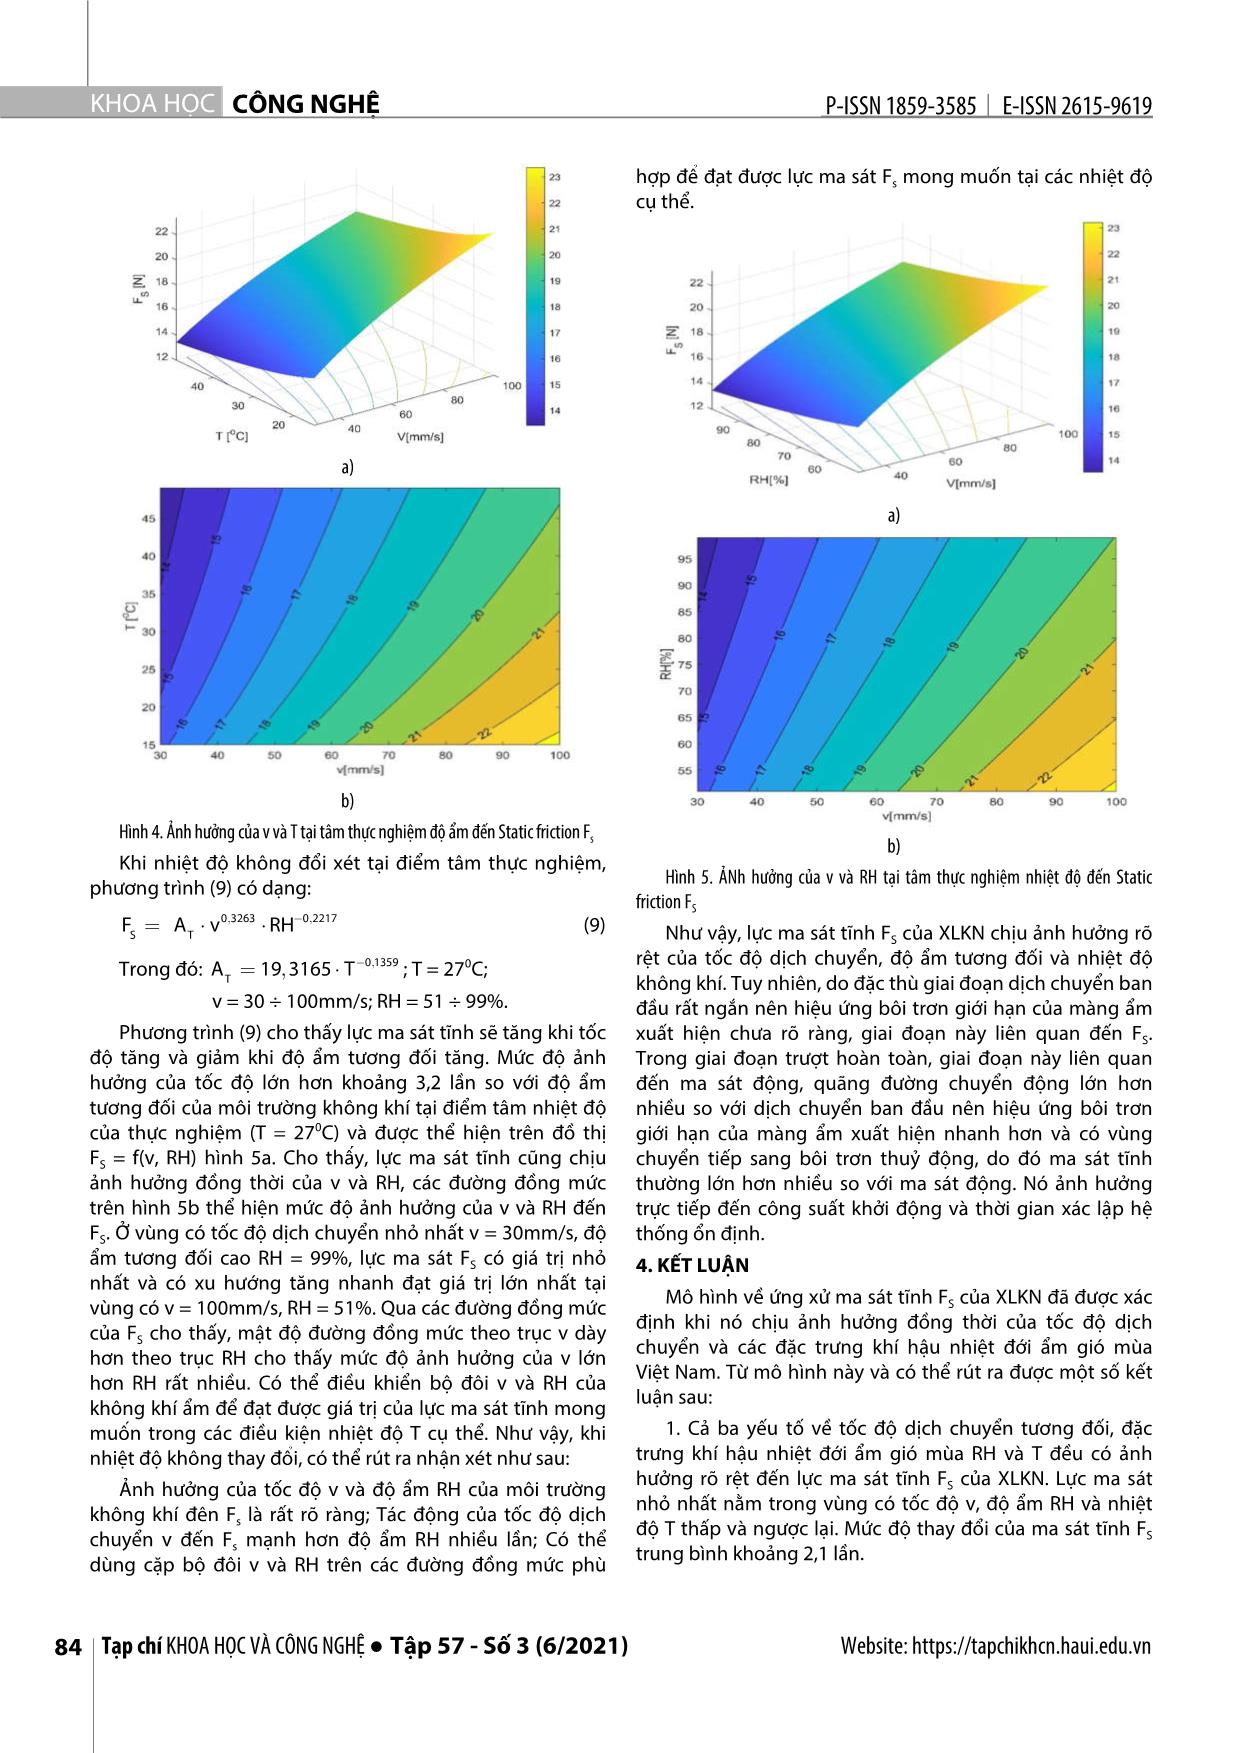 Mô hình ma sát tĩnh của xylanh khí nén trong điều kiện tốc độ dịch chuyển và nhiệt - ẩm không khí thay đổi trang 5